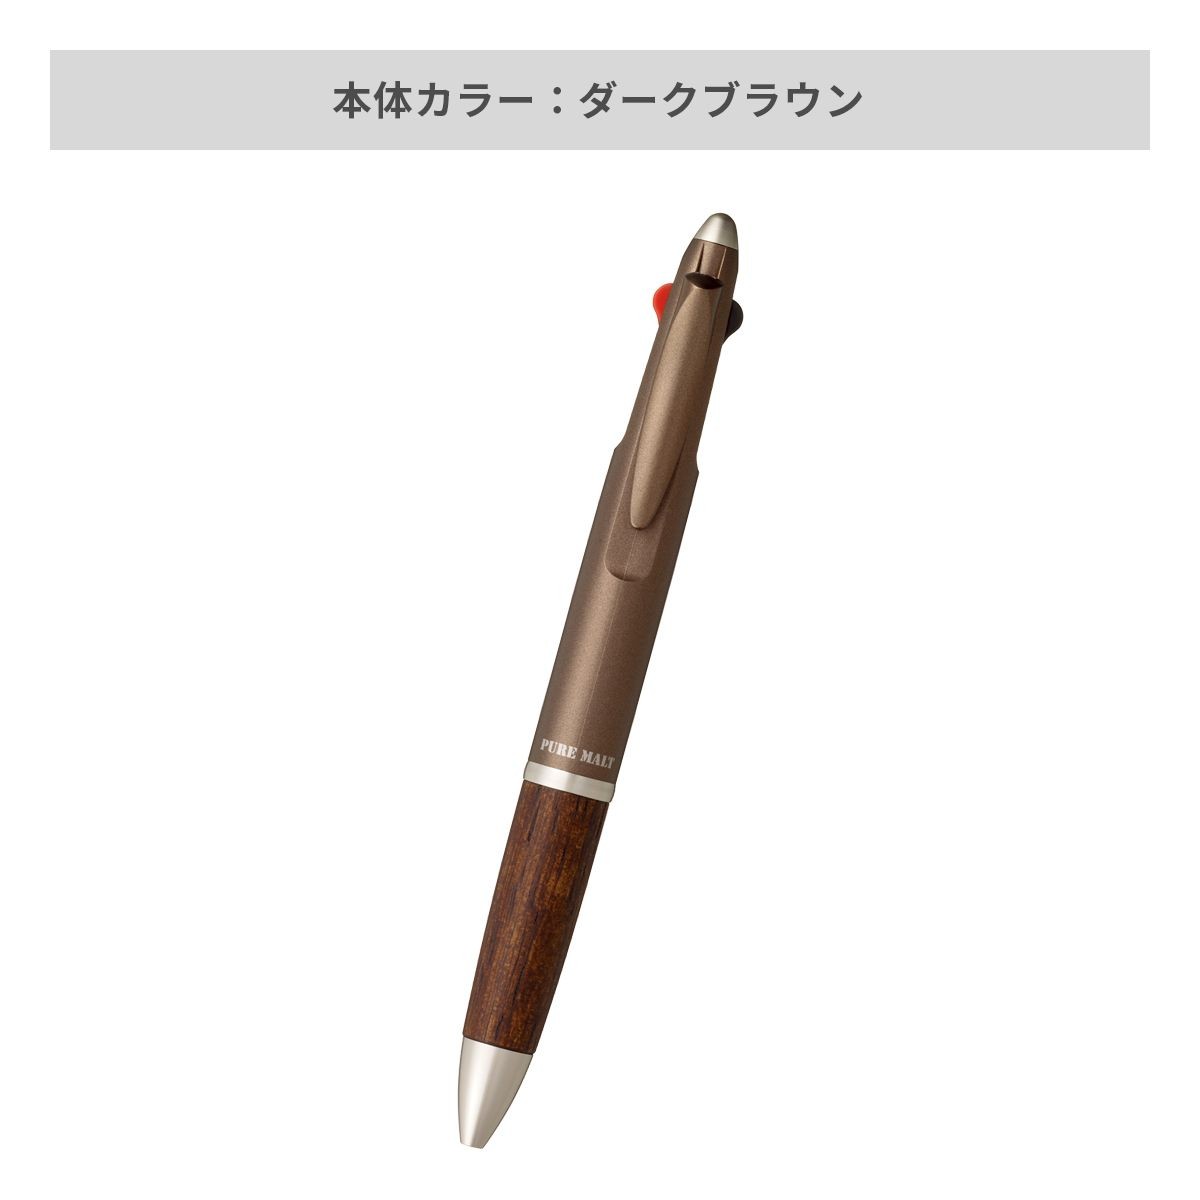 三菱鉛筆 ピュアモルト3機能ペン 0.7mm【多機能ペン / パッド印刷】 画像4